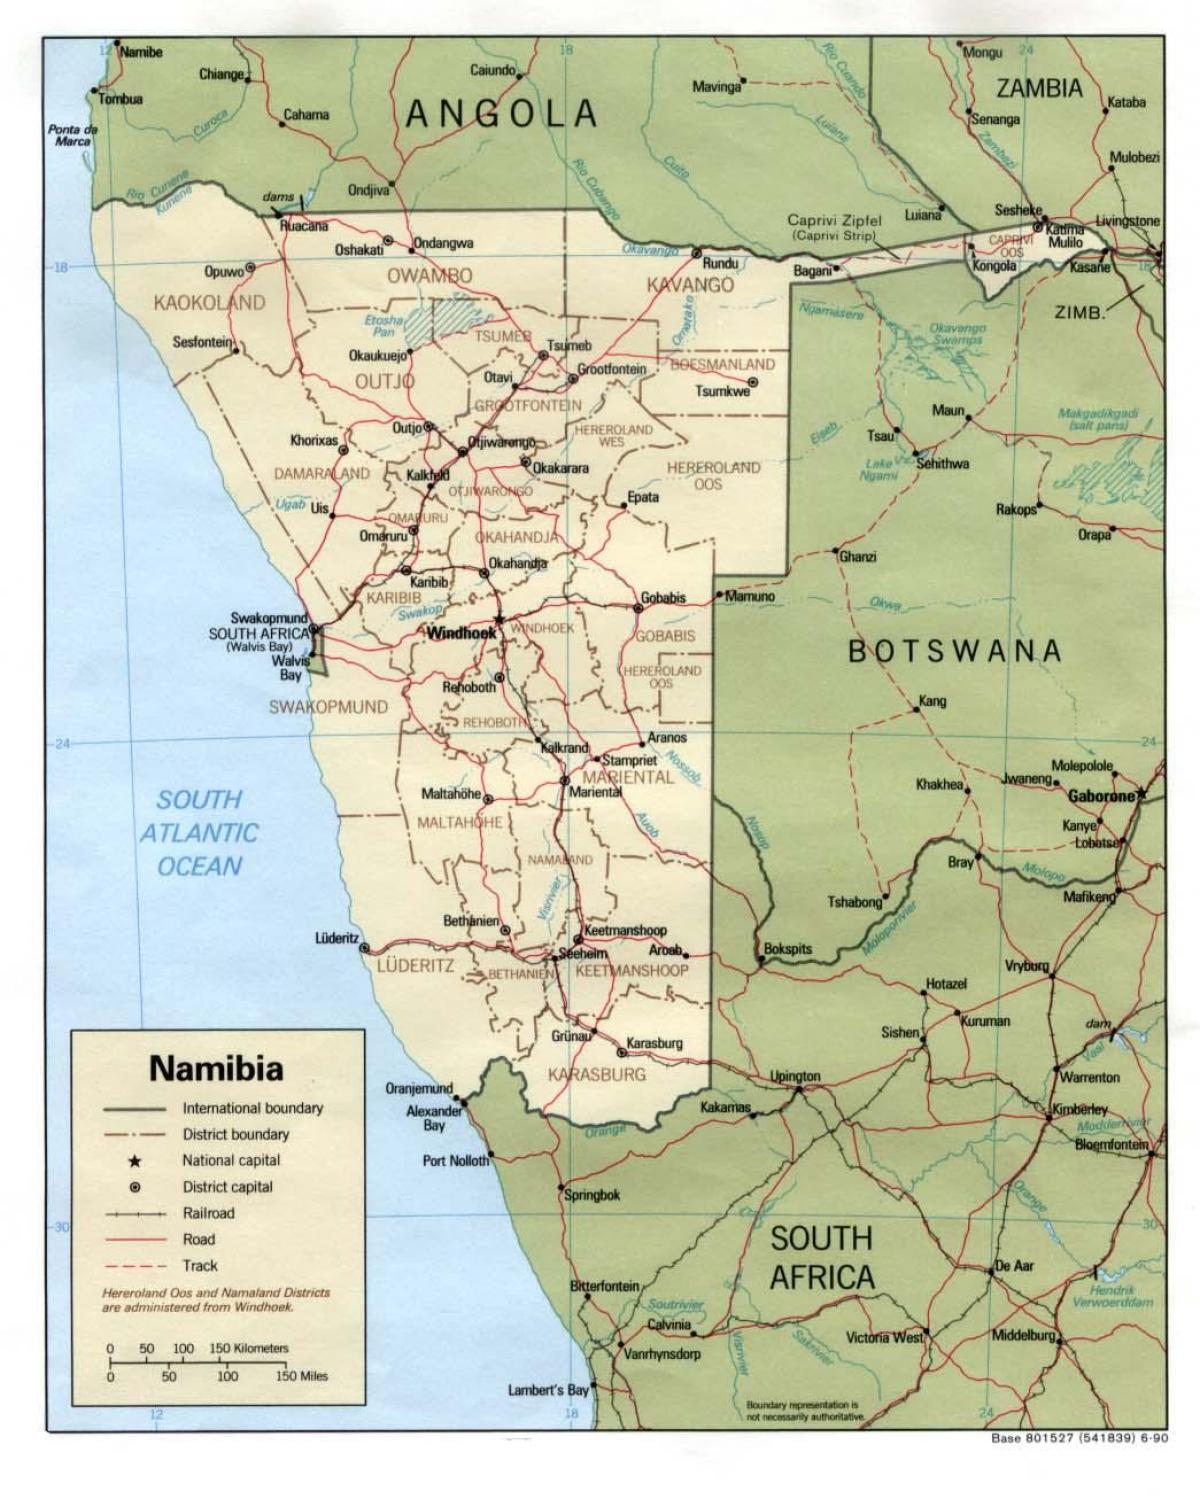 Namibian зураг нь бүх хот